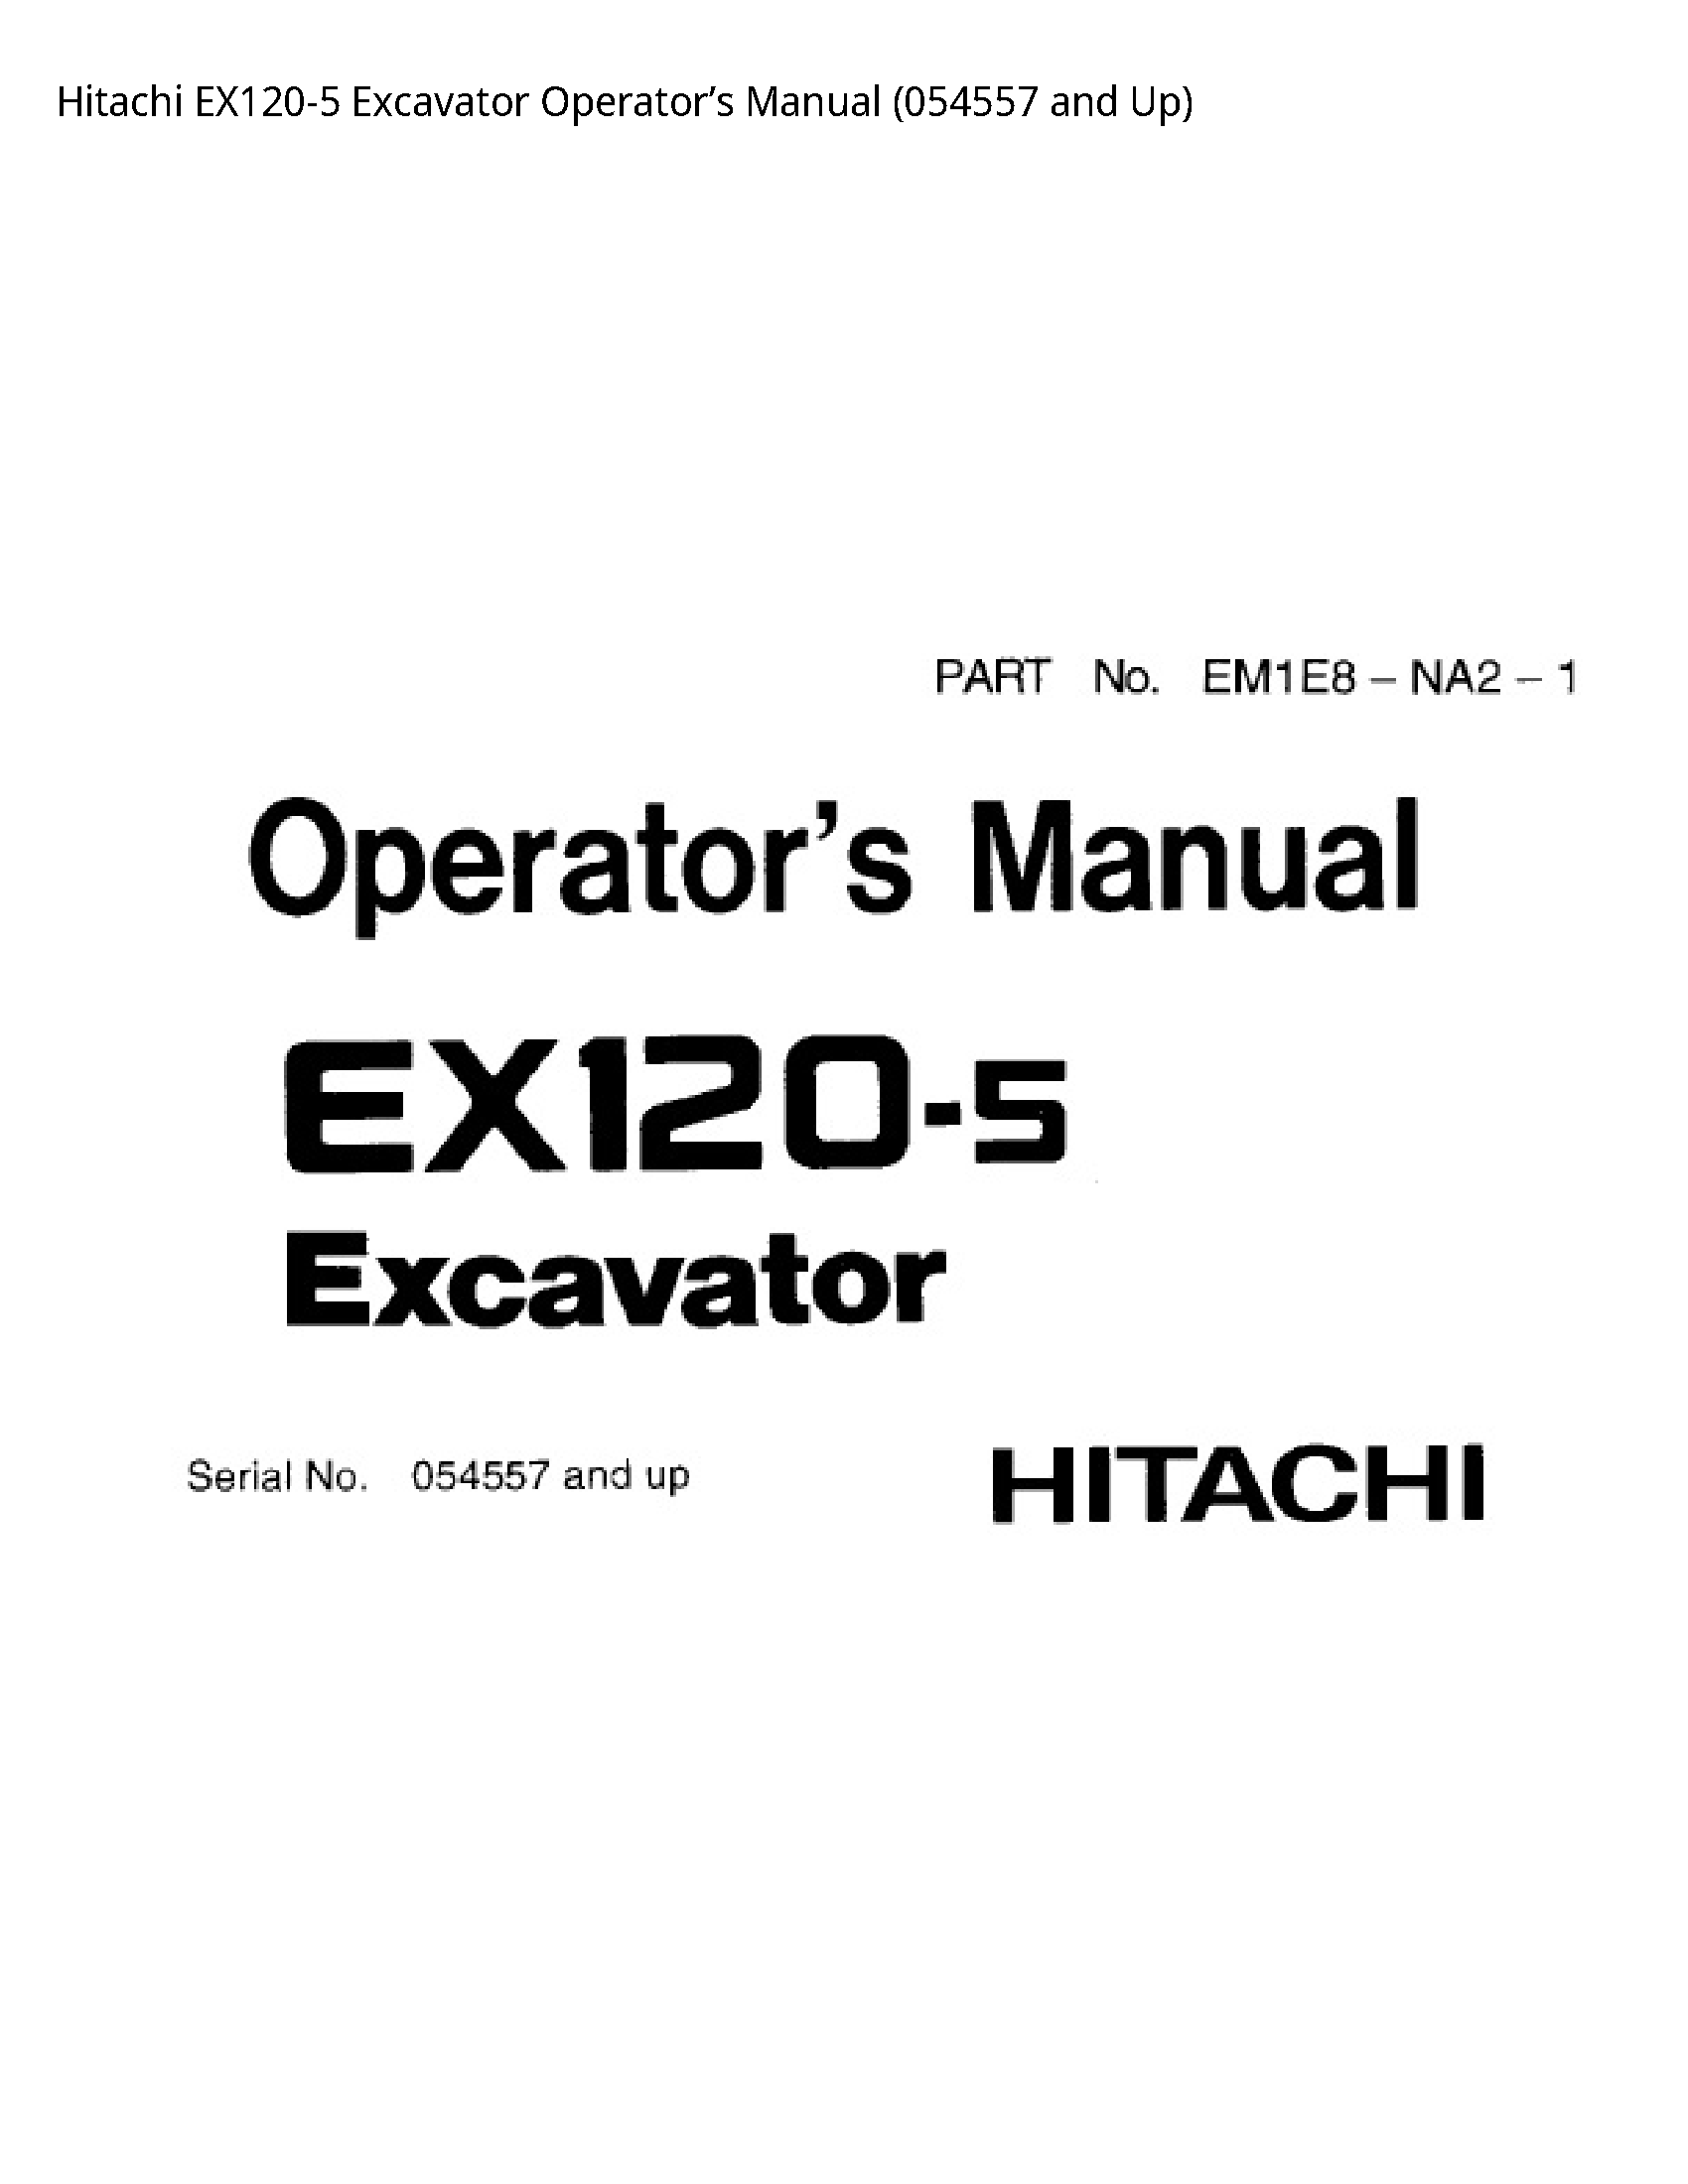 Hitachi EX120-5 Excavator Operator’s manual